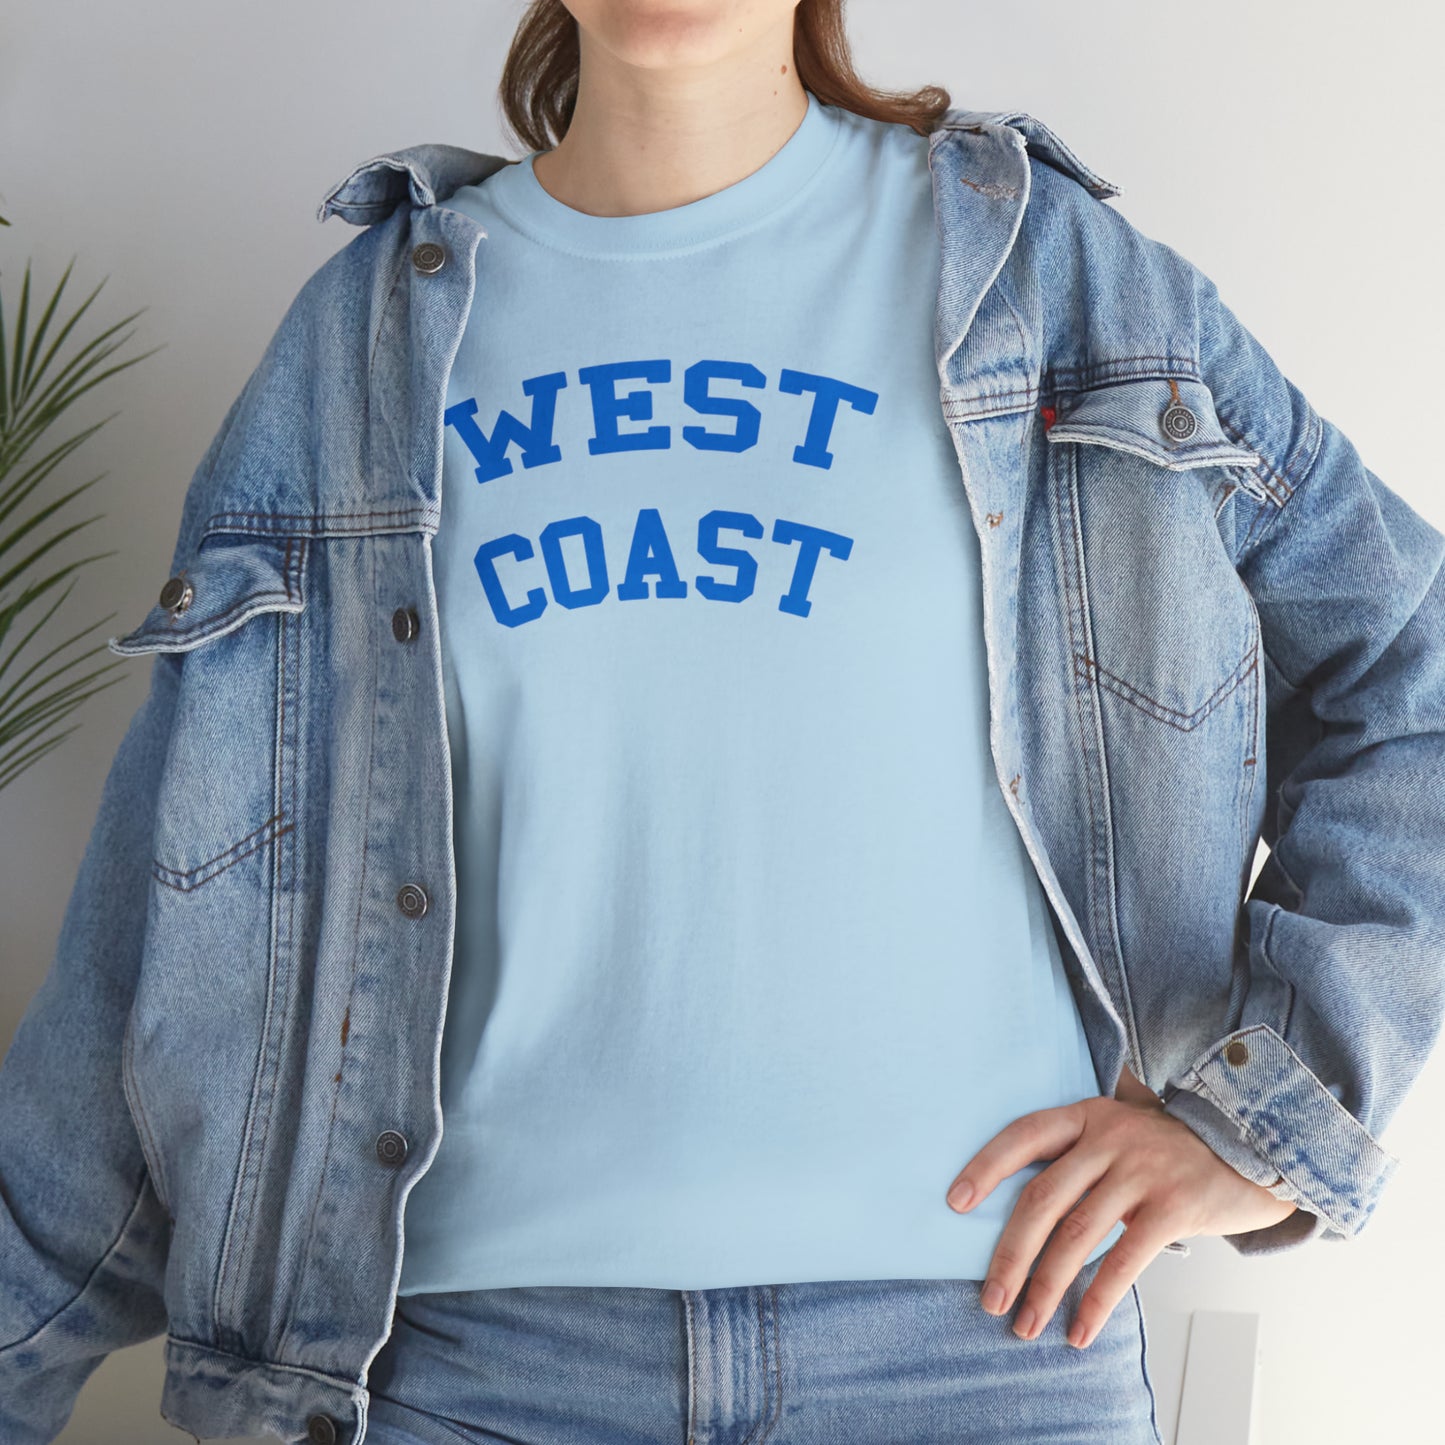 West Coast T-Shirt